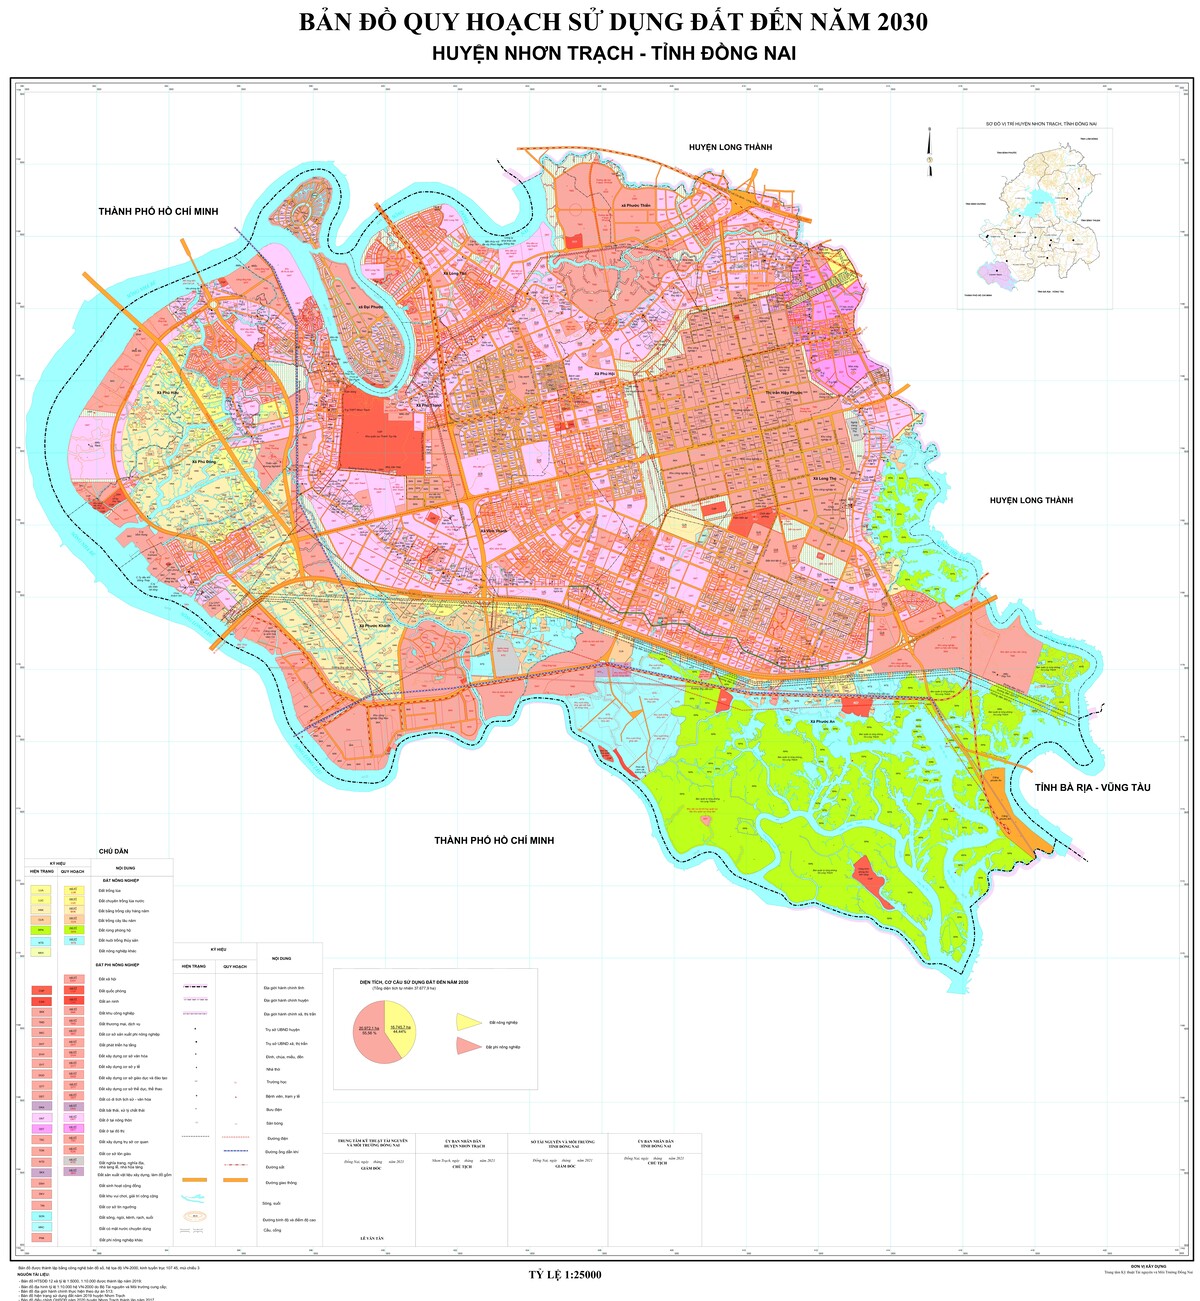 Bản đồ quy hoạch huyện Nhơn Trạch, tỉnh Đồng Nai đến năm 2030 - Tân Đại ...